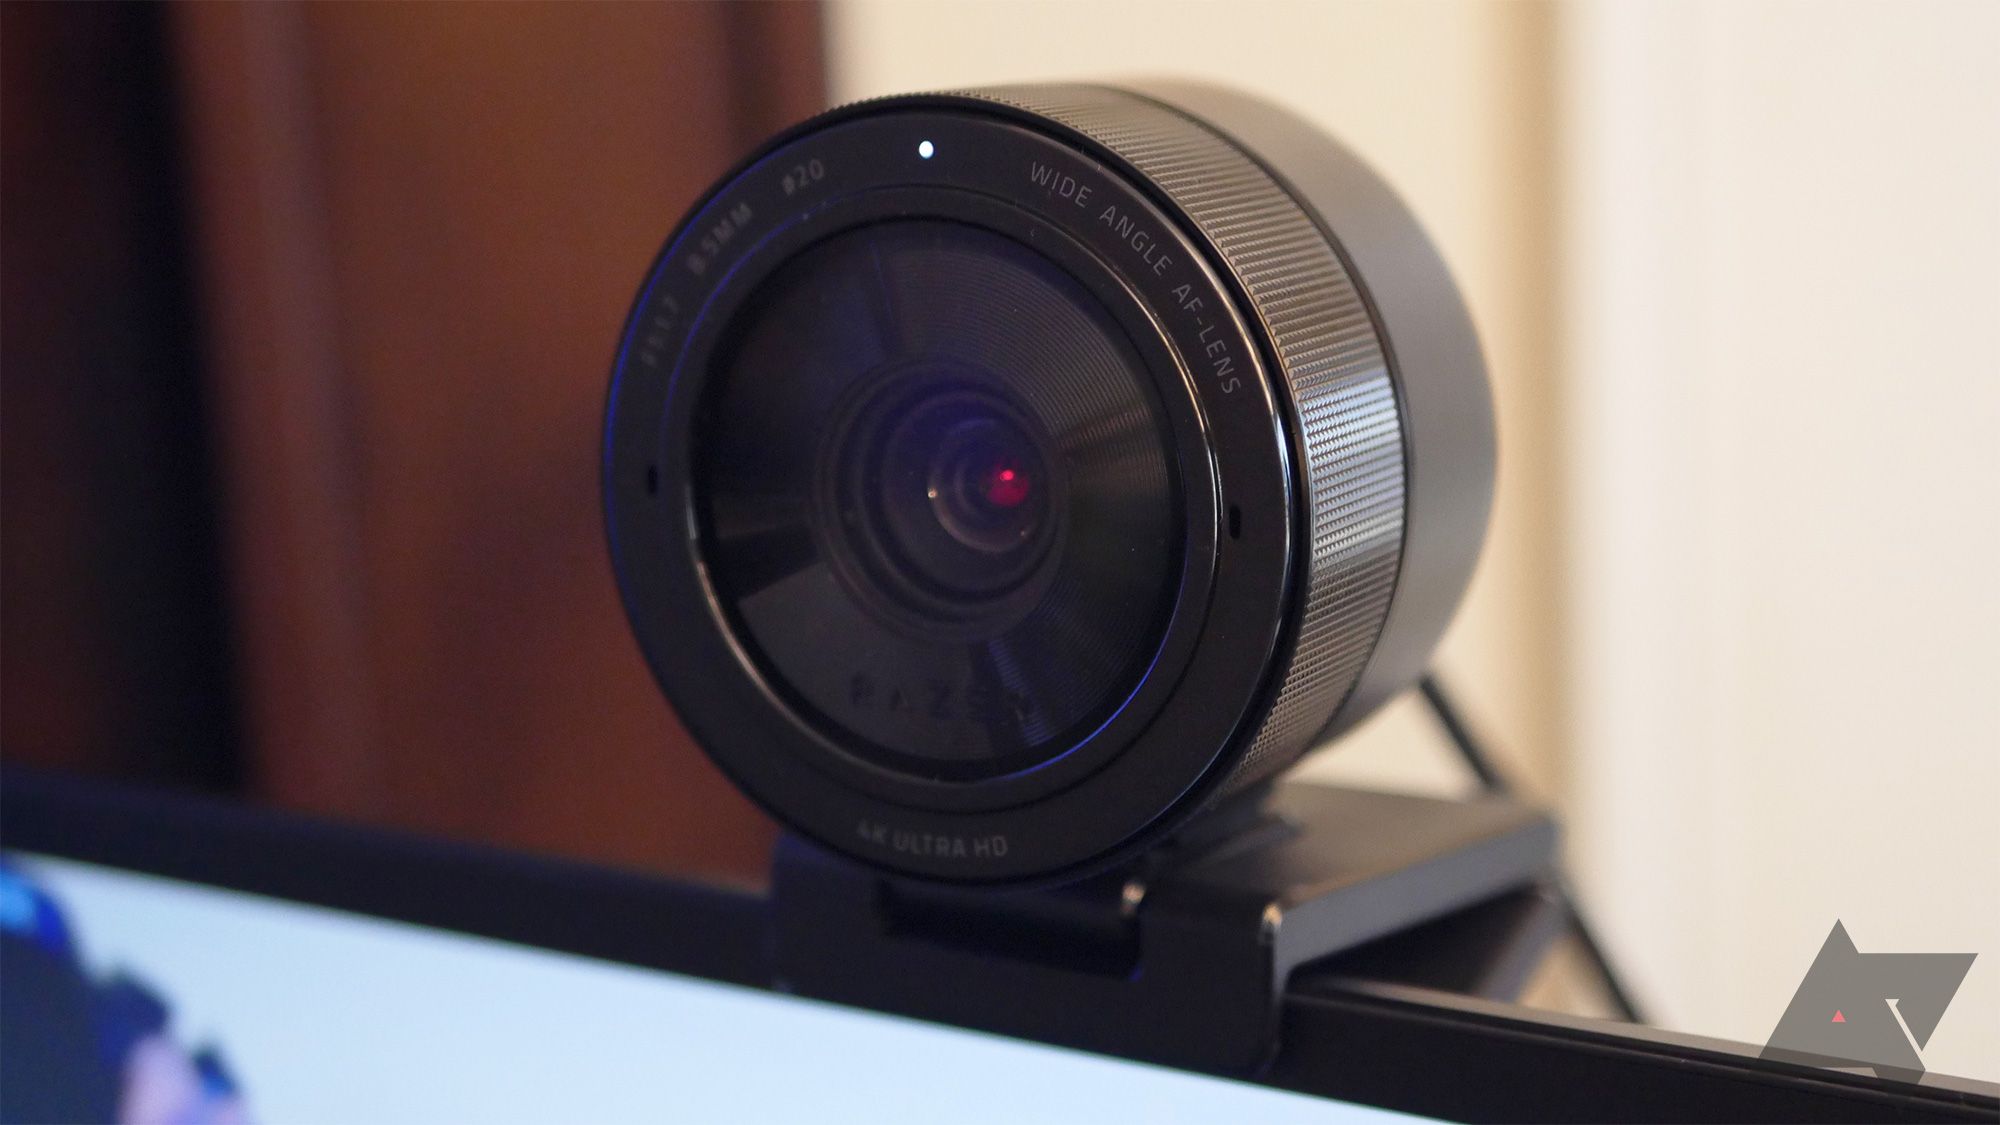 razer kiyo pro webcam mounted on top of monitor